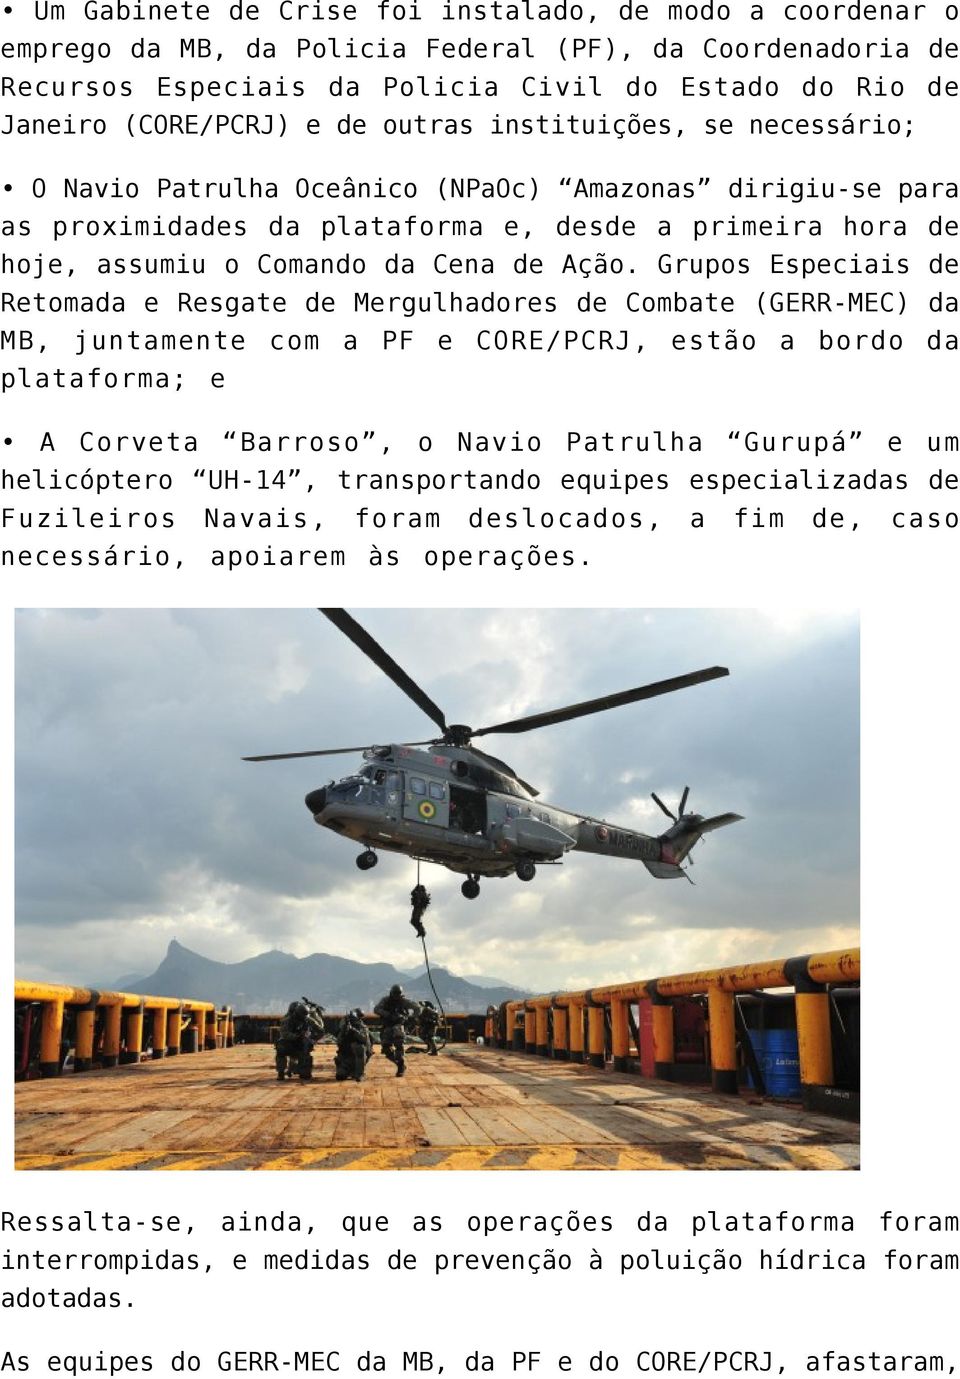 Grupos Especiais de Retomada e Resgate de Mergulhadores de Combate (GERR-MEC) da MB, juntamente com a PF e CORE/PCRJ, estão a bordo da plataforma; e A Corveta Barroso, o Navio Patrulha Gurupá e um